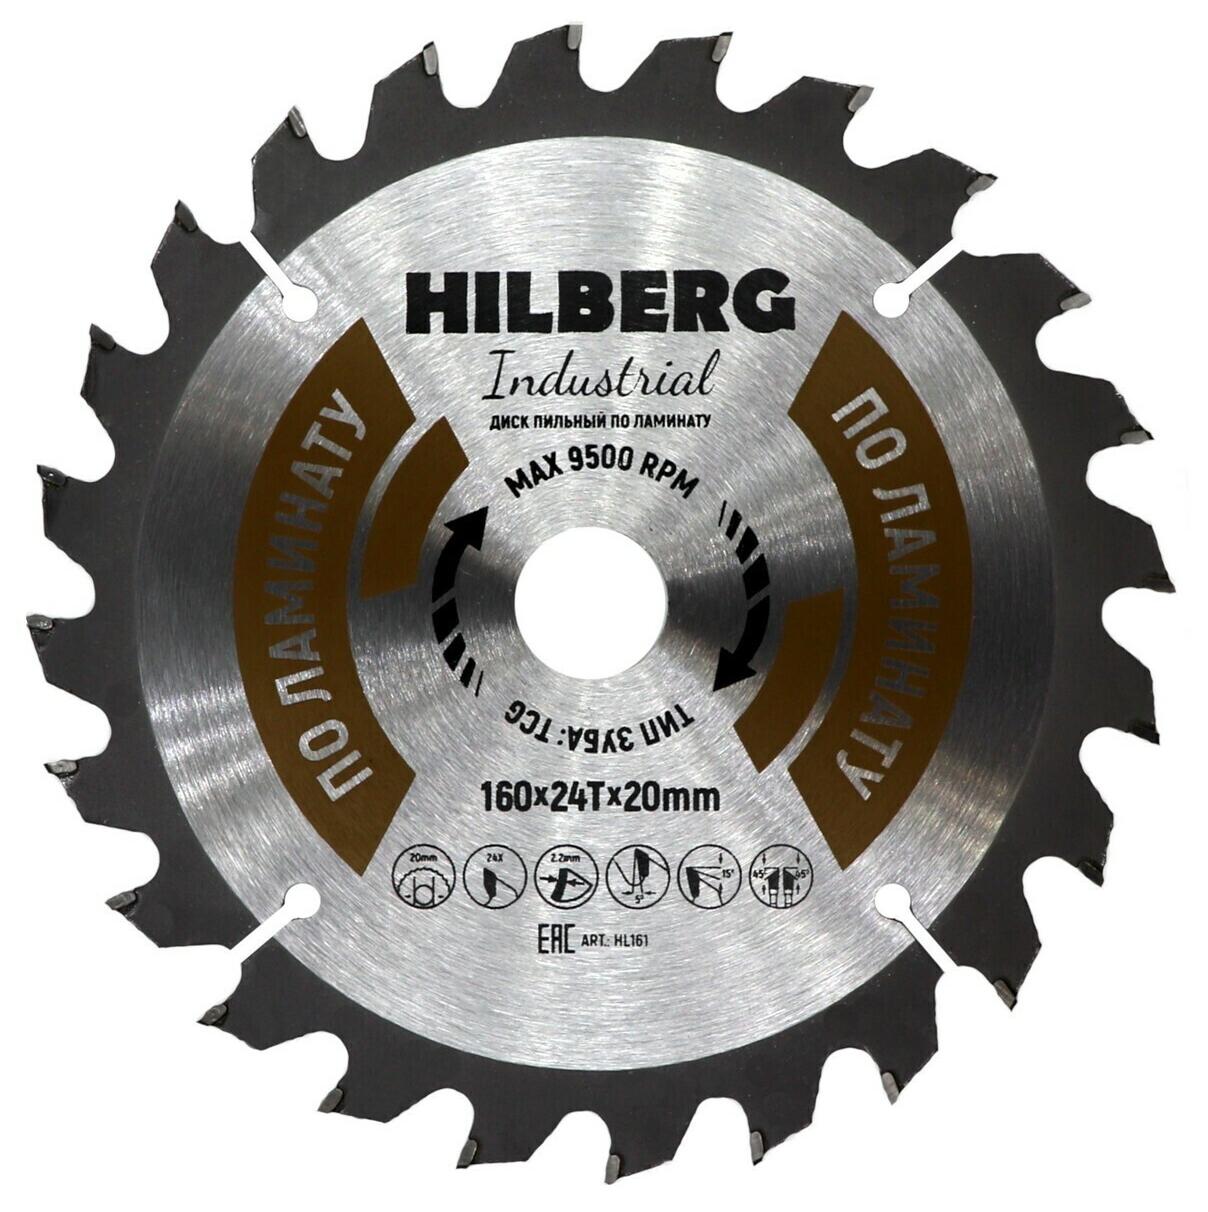 Пильный диск Hilberg Industrial Ламинат 160 (20/24T) мм, артикул 